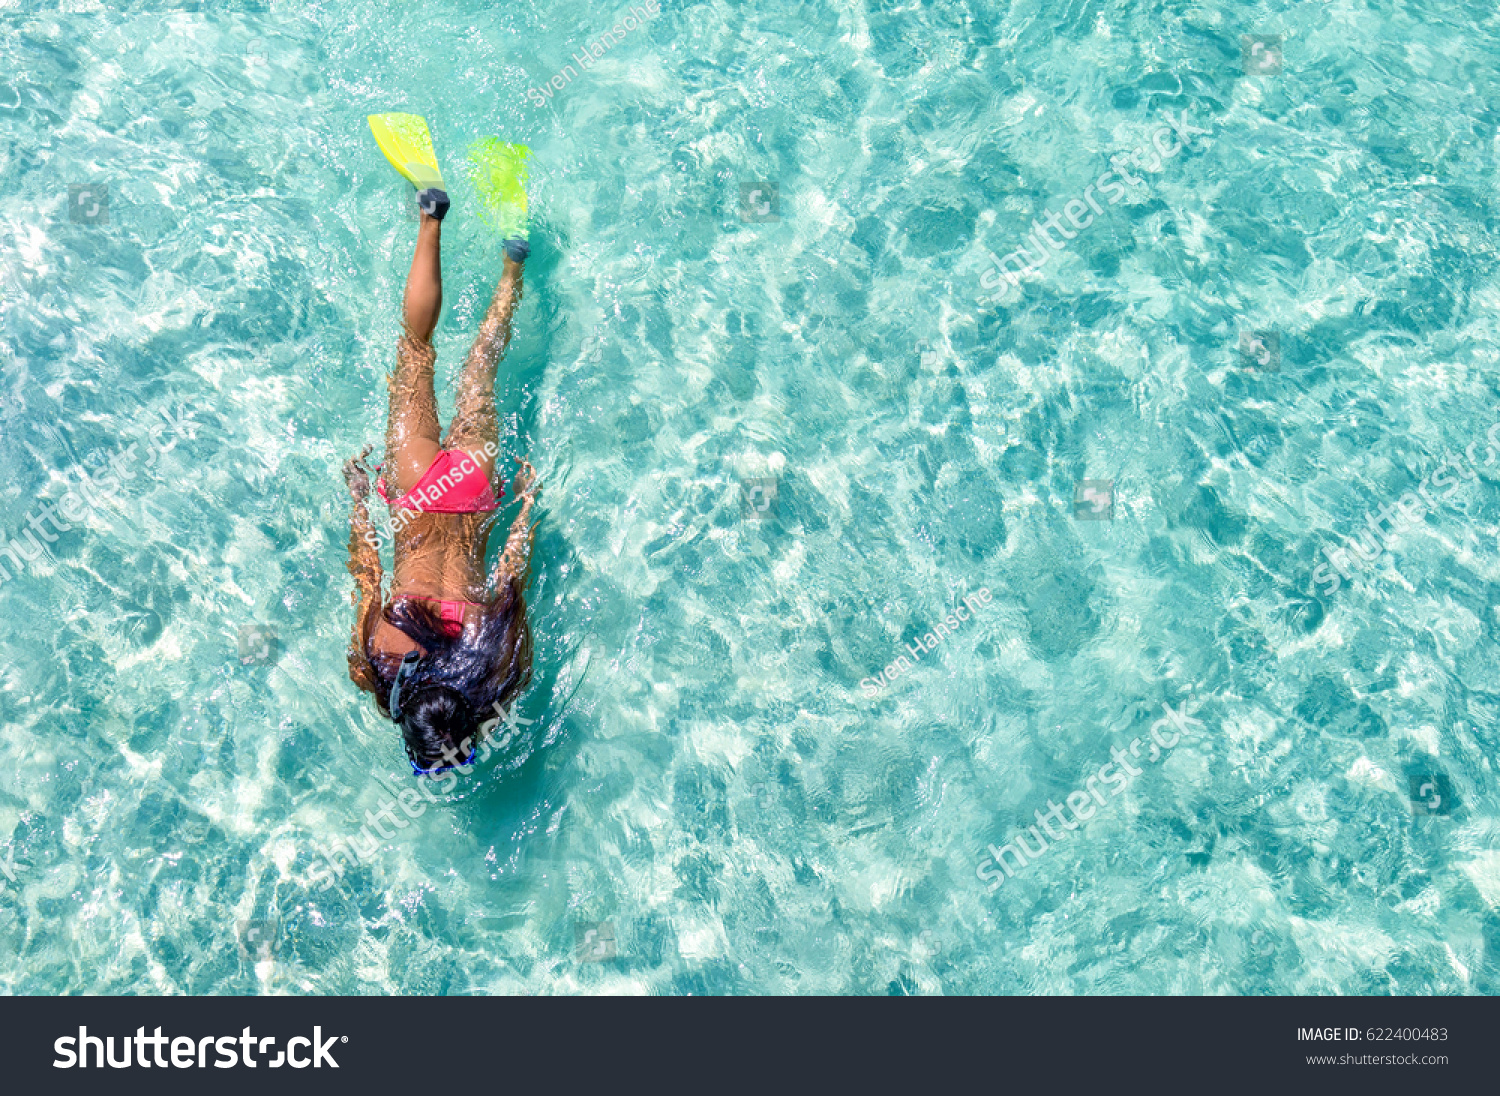 18,518 Female snorkeler Images, Stock Photos & Vectors | Shutterstock